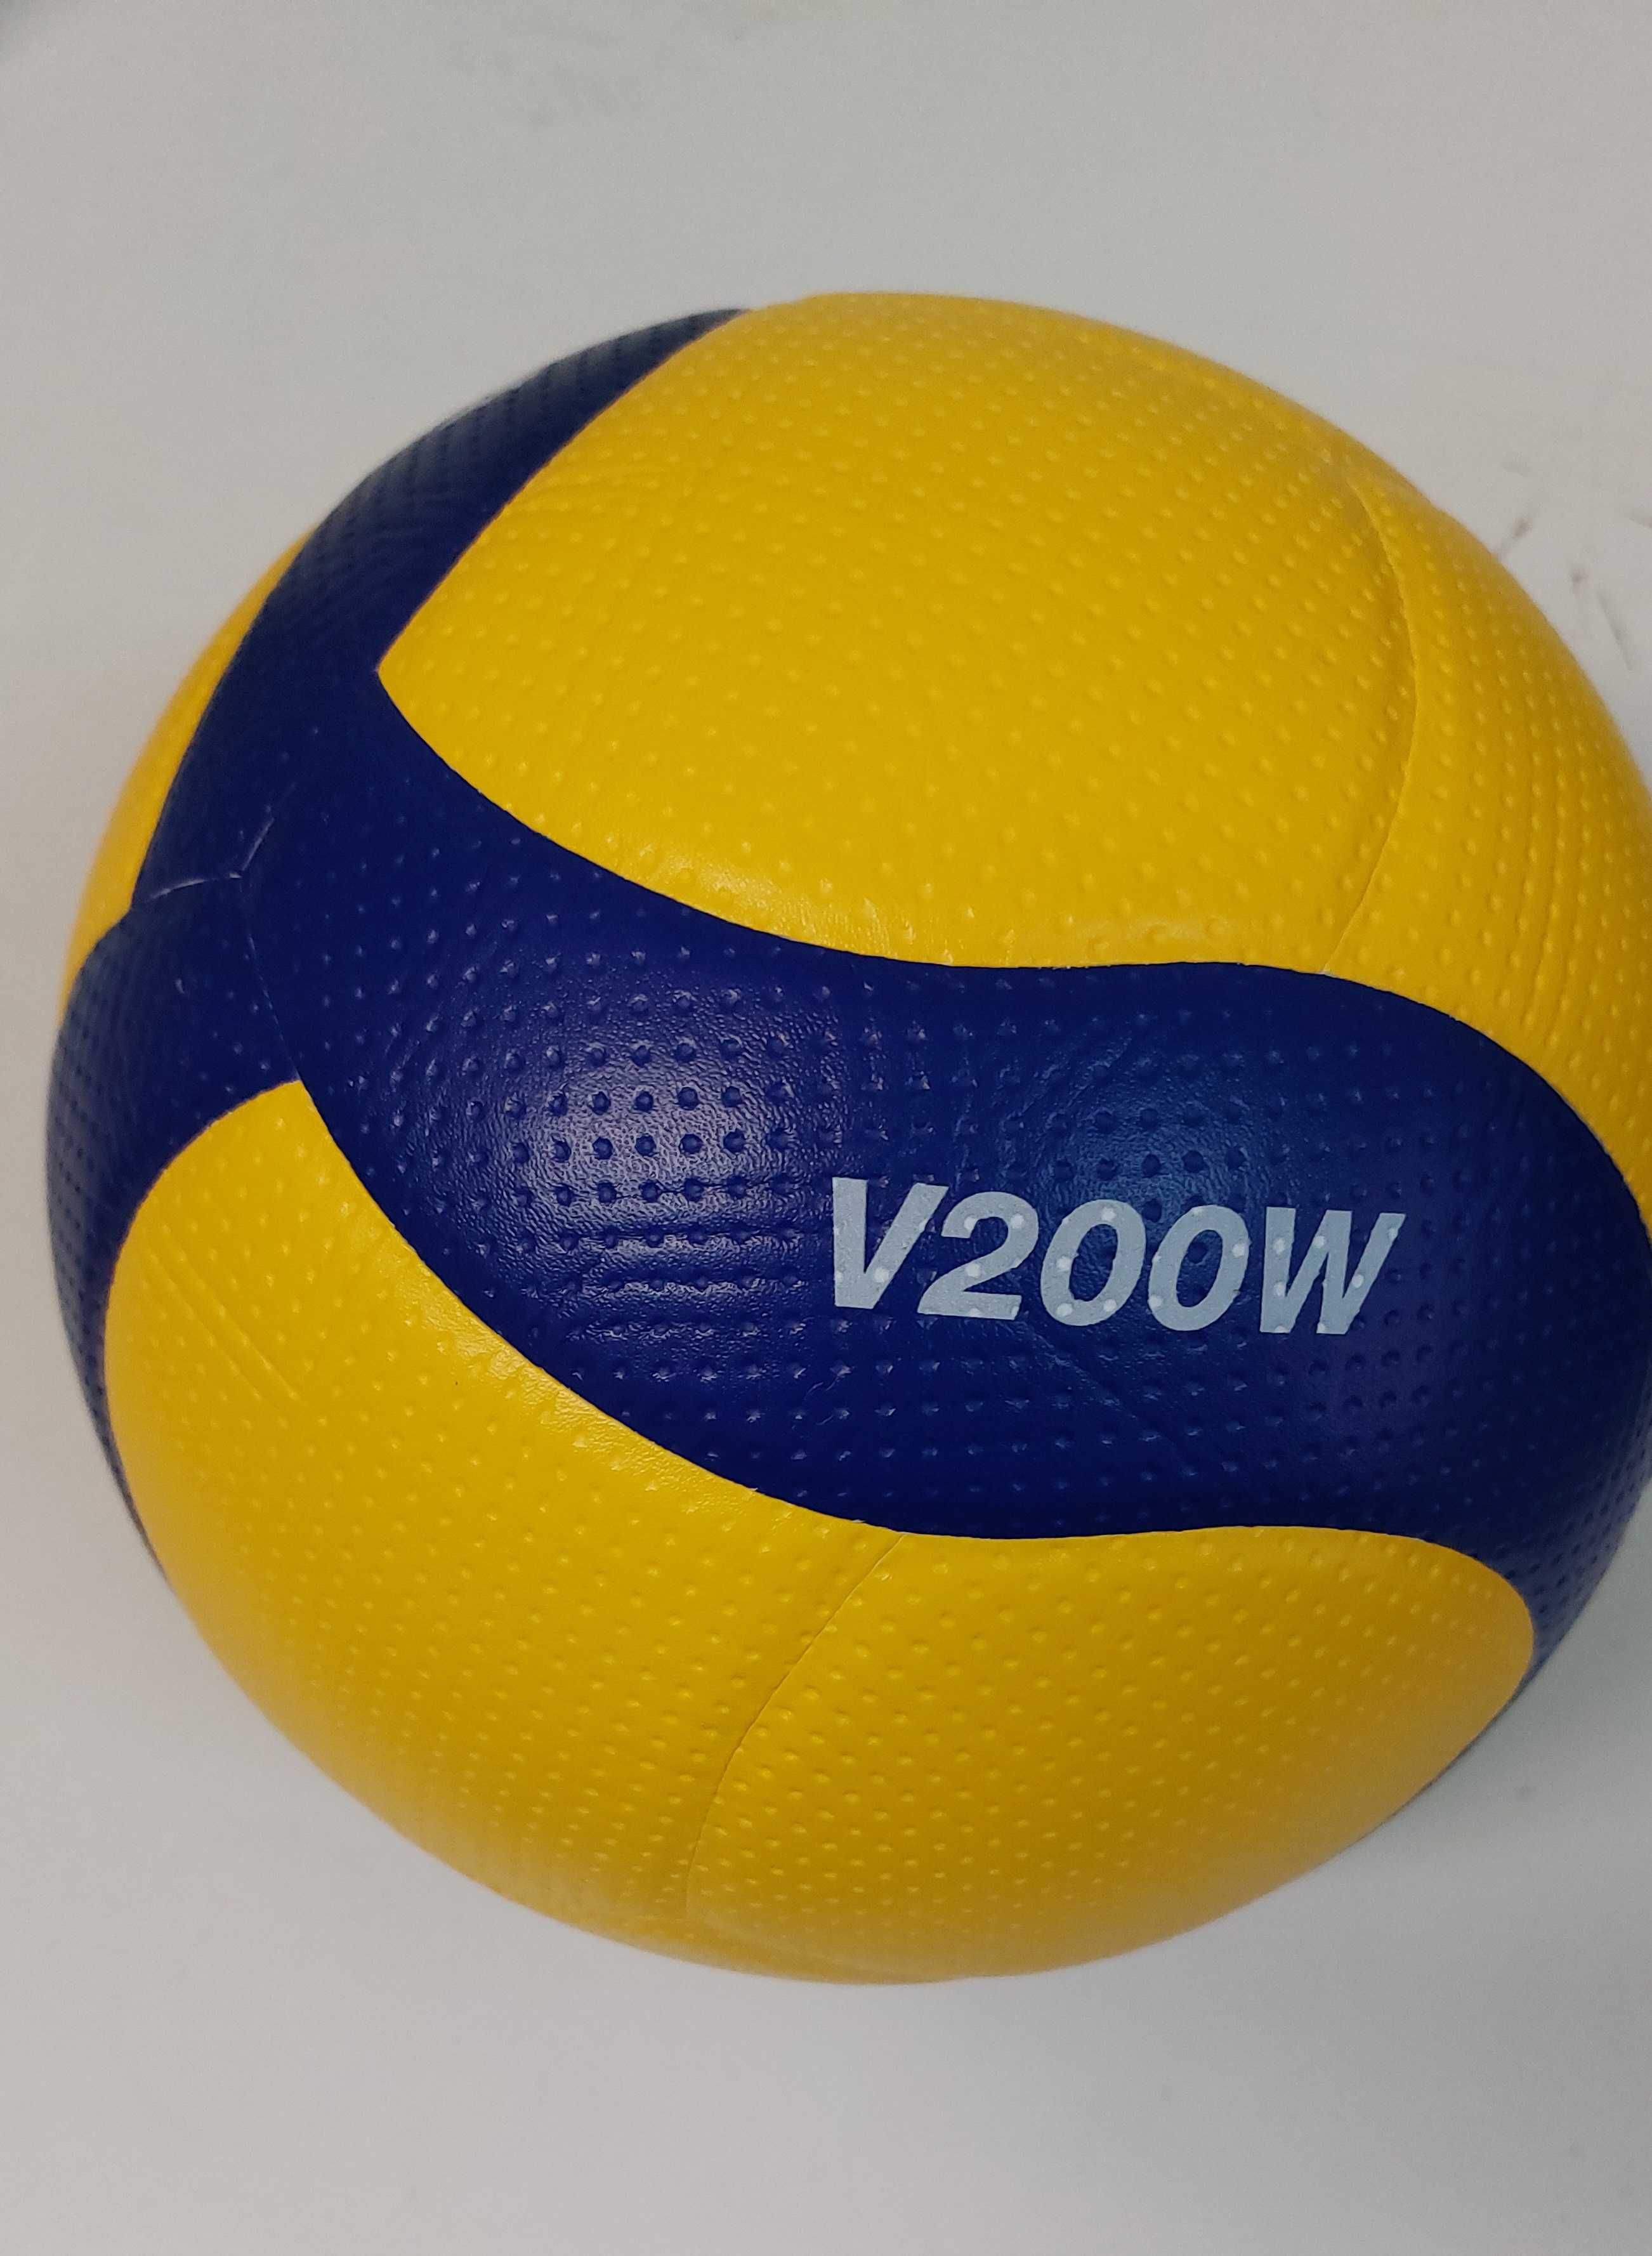 Продам мячи Mikasa V300W/200W оригинал новые волейбольные